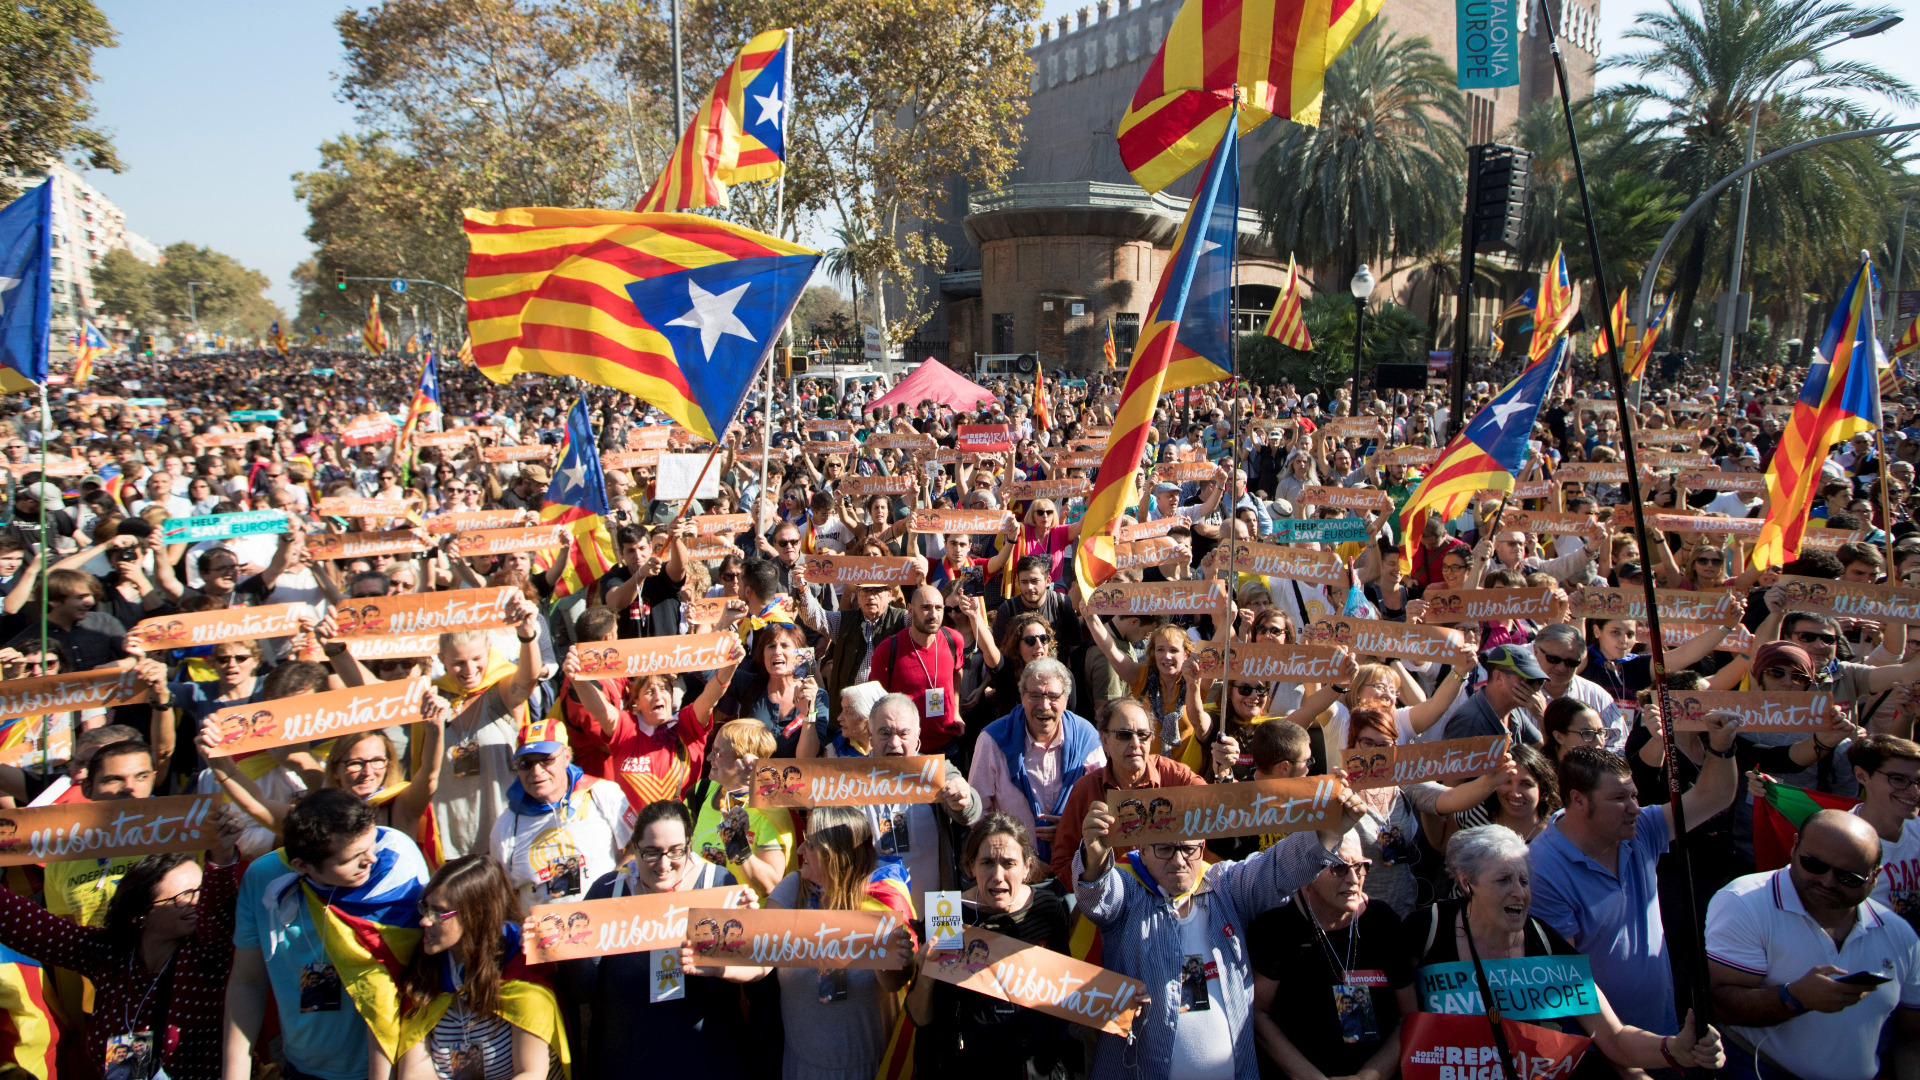 Спада популярността на сепаратистите в Каталуния. Това заяви в интервю